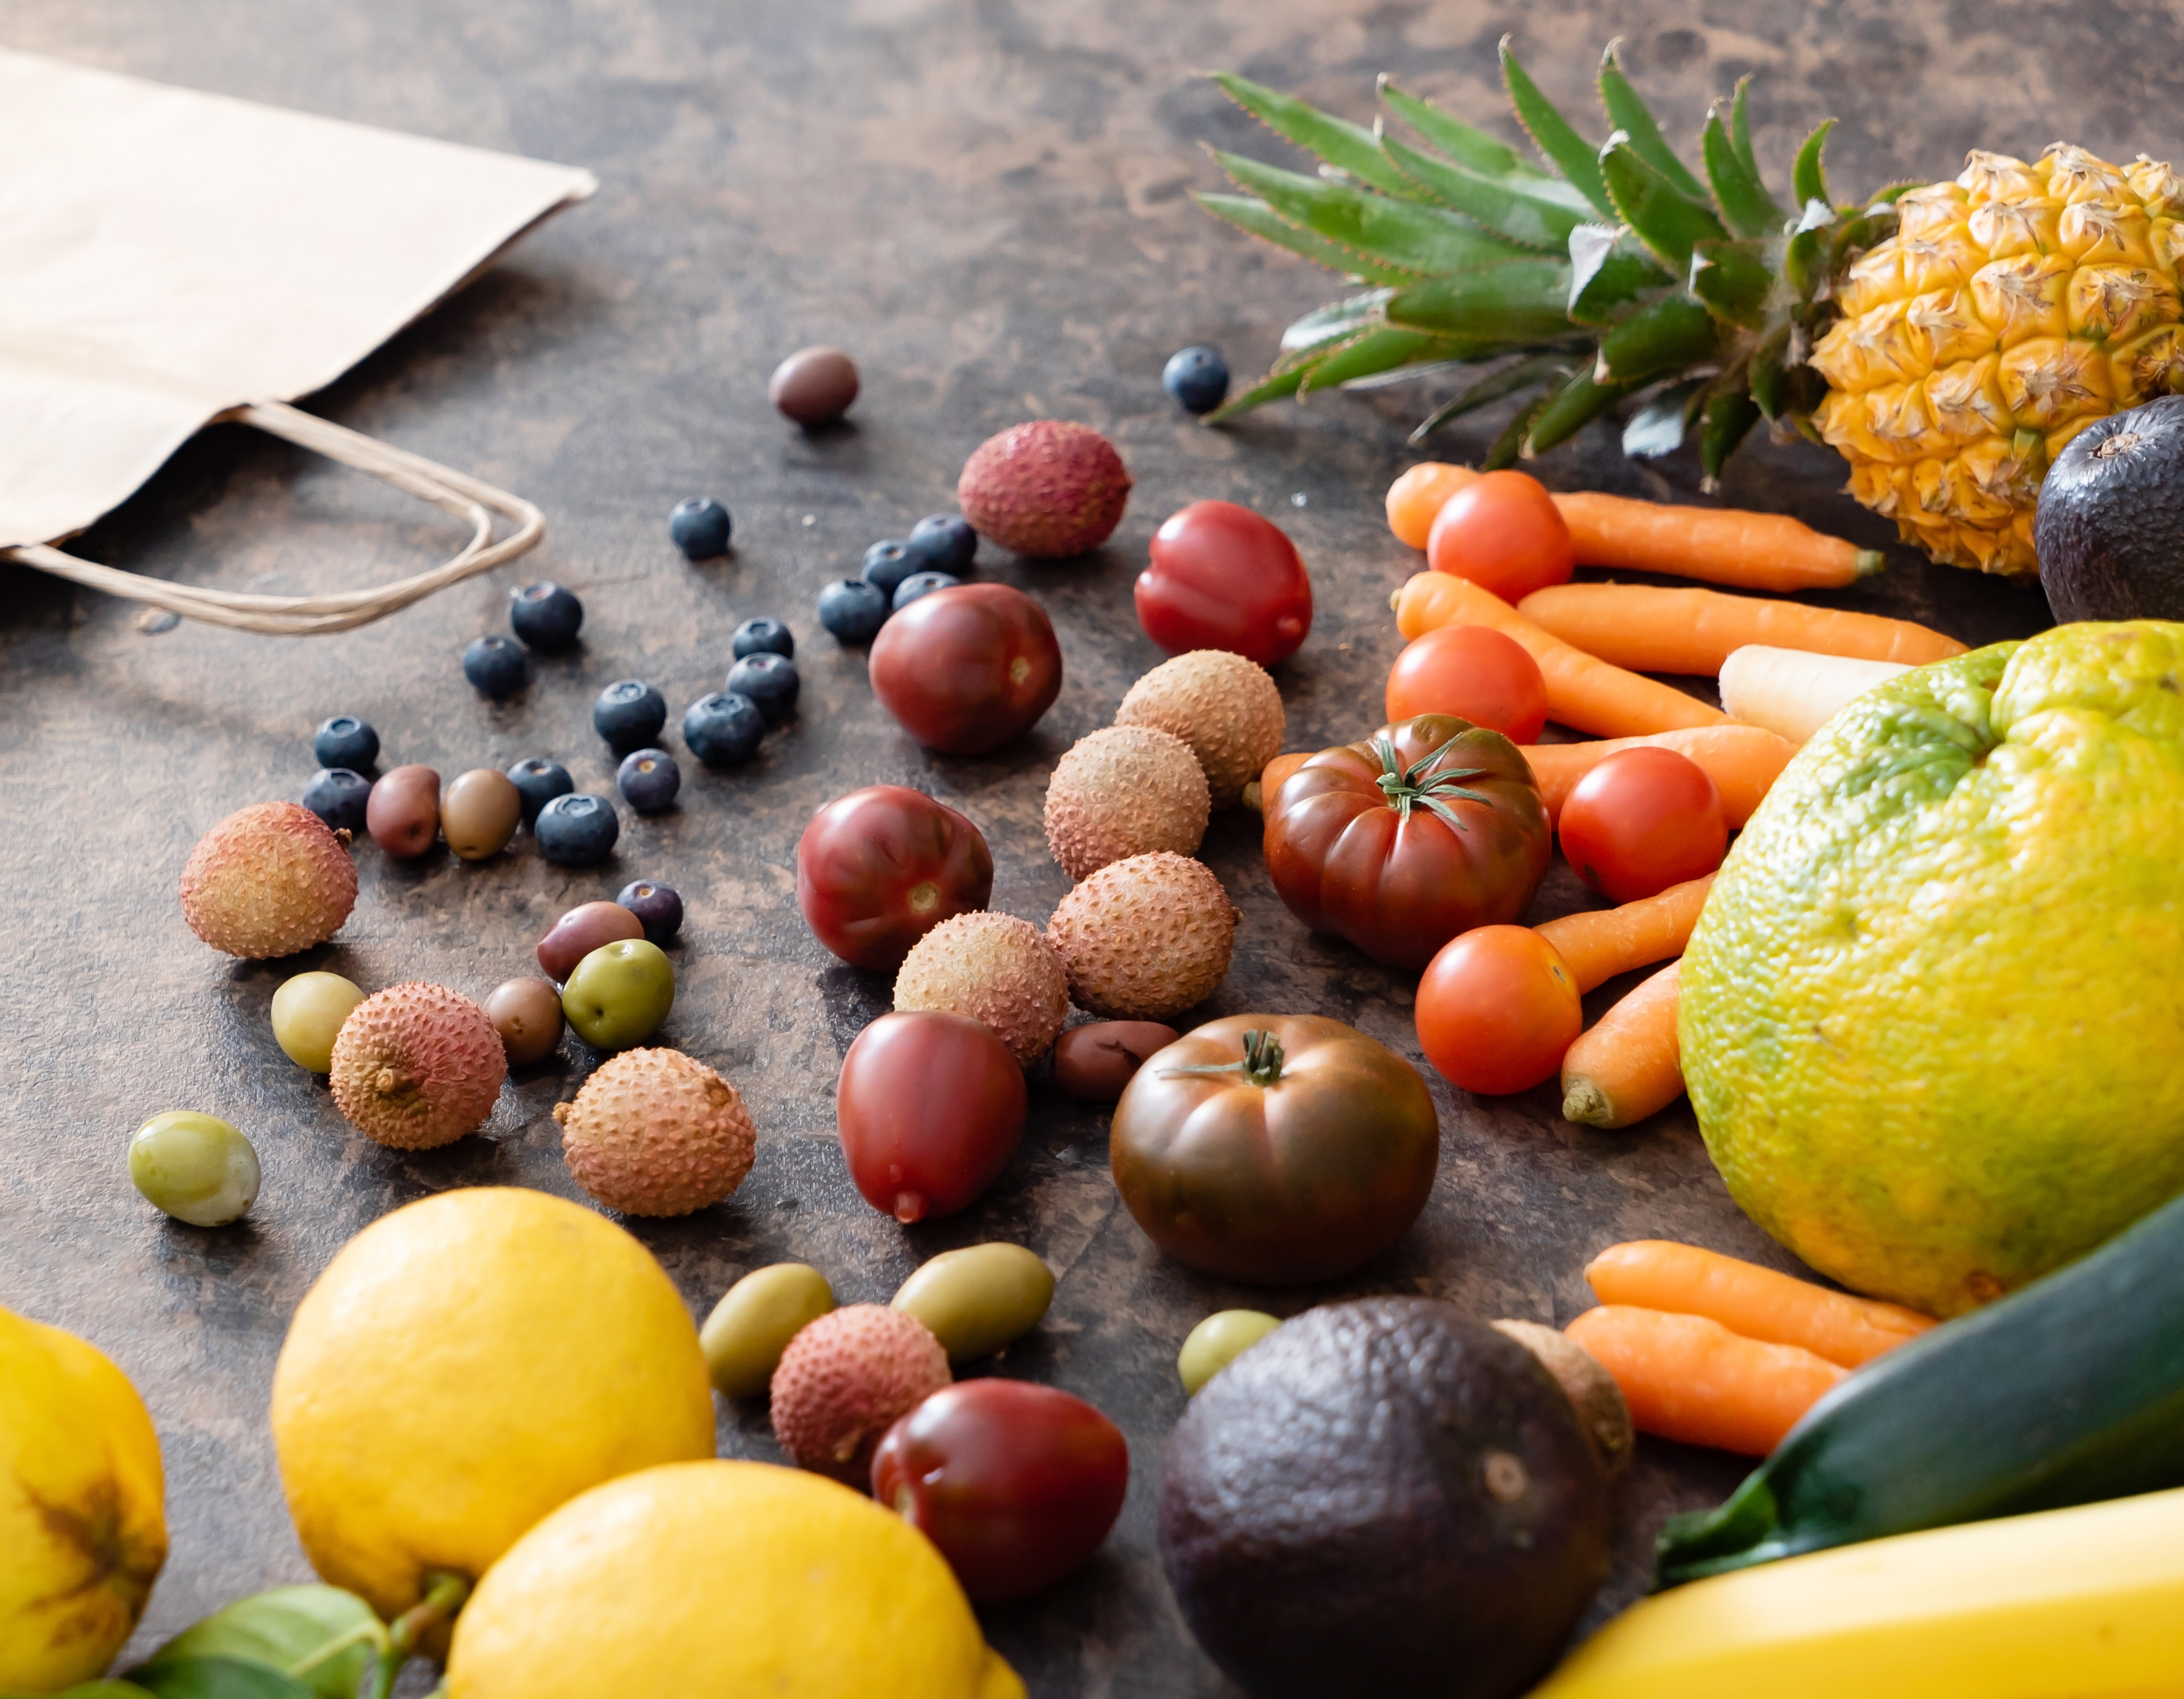 Consumir alimentos de manera responsable también  ayuda a disminuir el porcentaje de desperdicios en el mundo. (Foto Prensa Libre: Shutterstock)